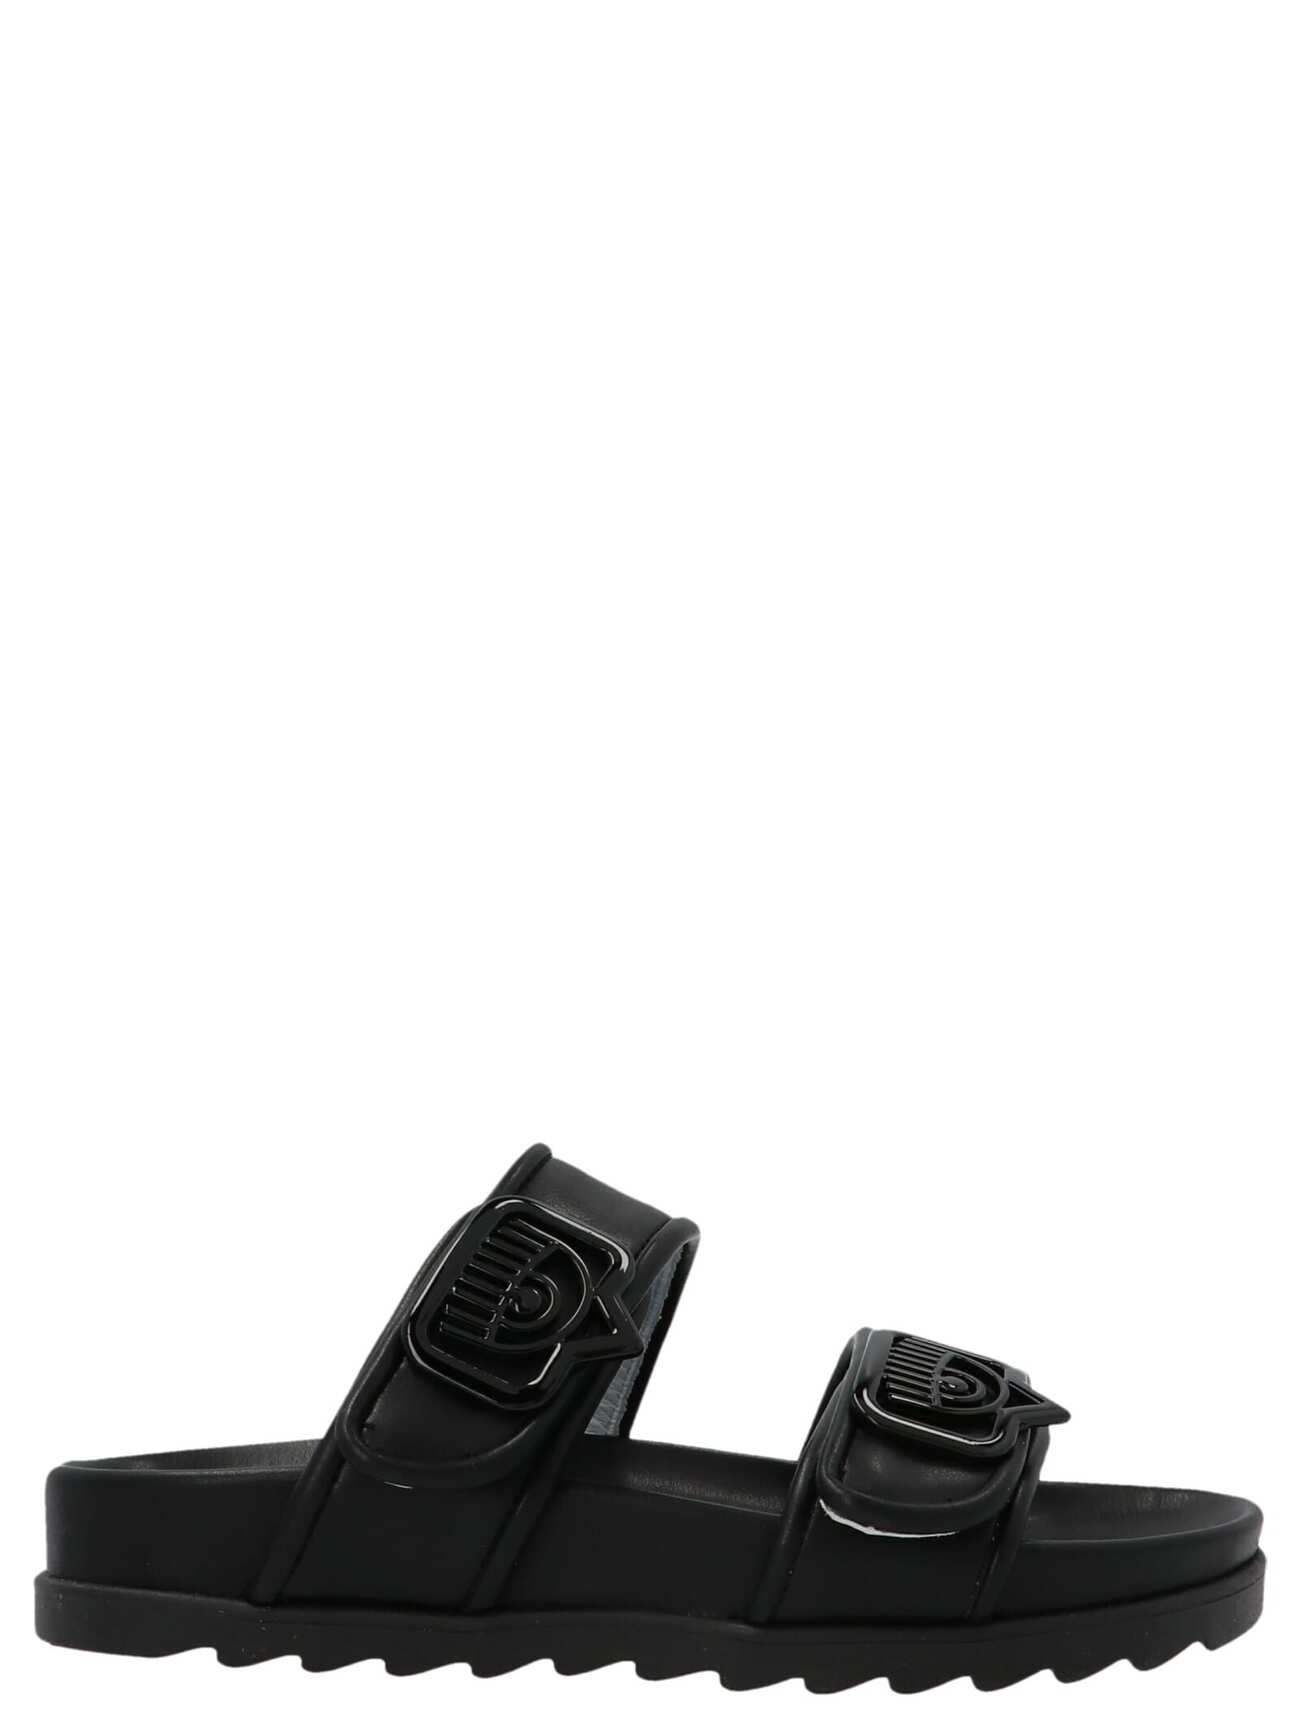 Chiara Ferragni Double Strap Sandals in black